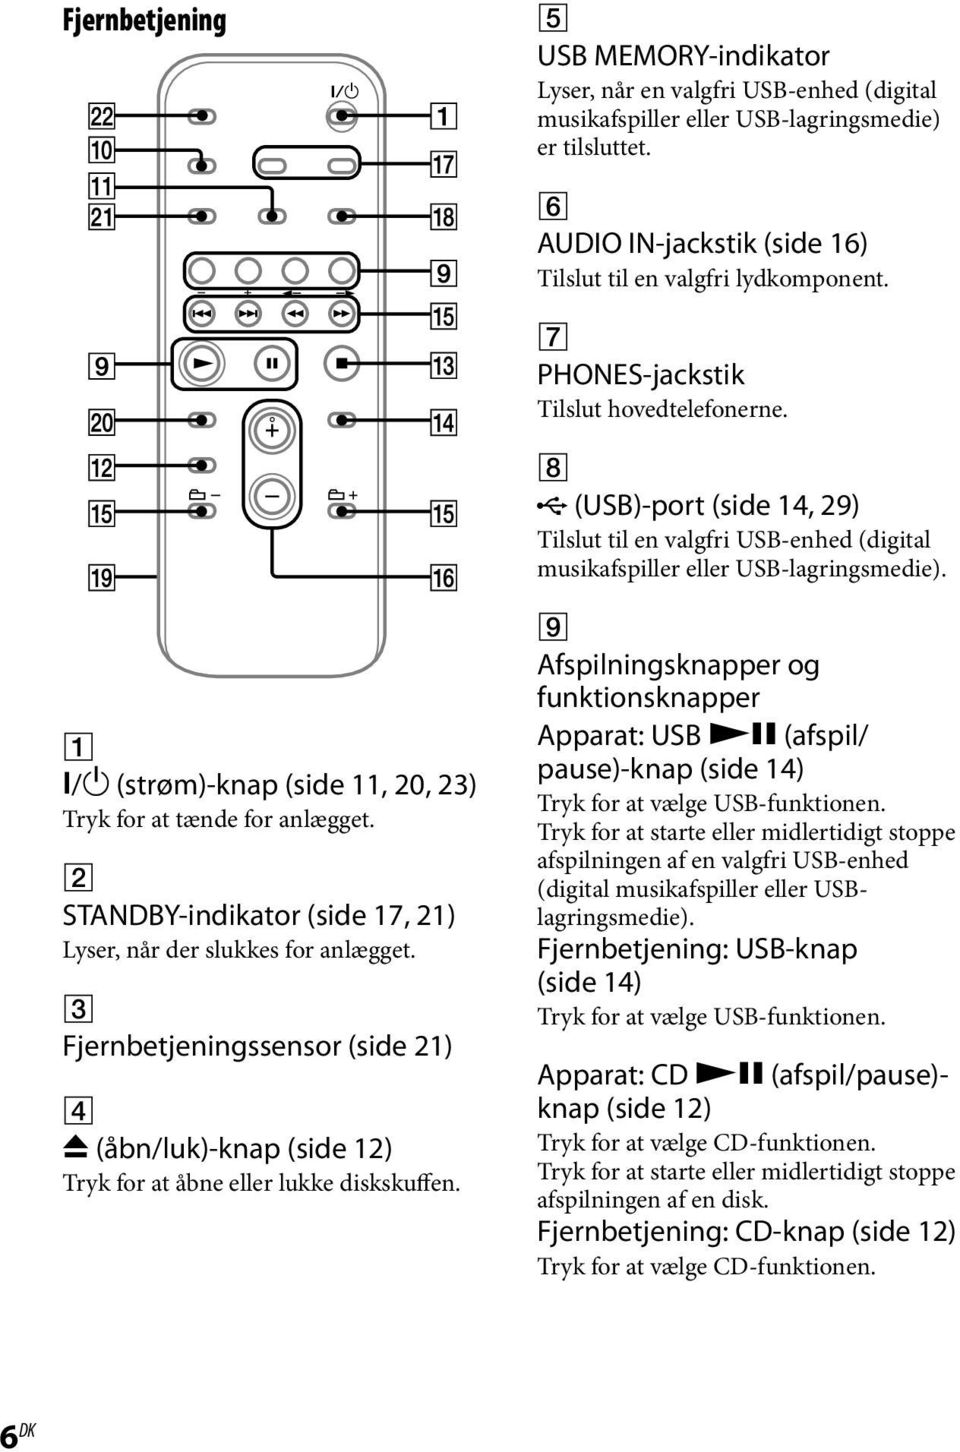 / (strøm)-knap (side 11, 20, 23) Tryk for at tænde for anlægget. STANDBY-indikator (side 17, 21) Lyser, når der slukkes for anlægget.